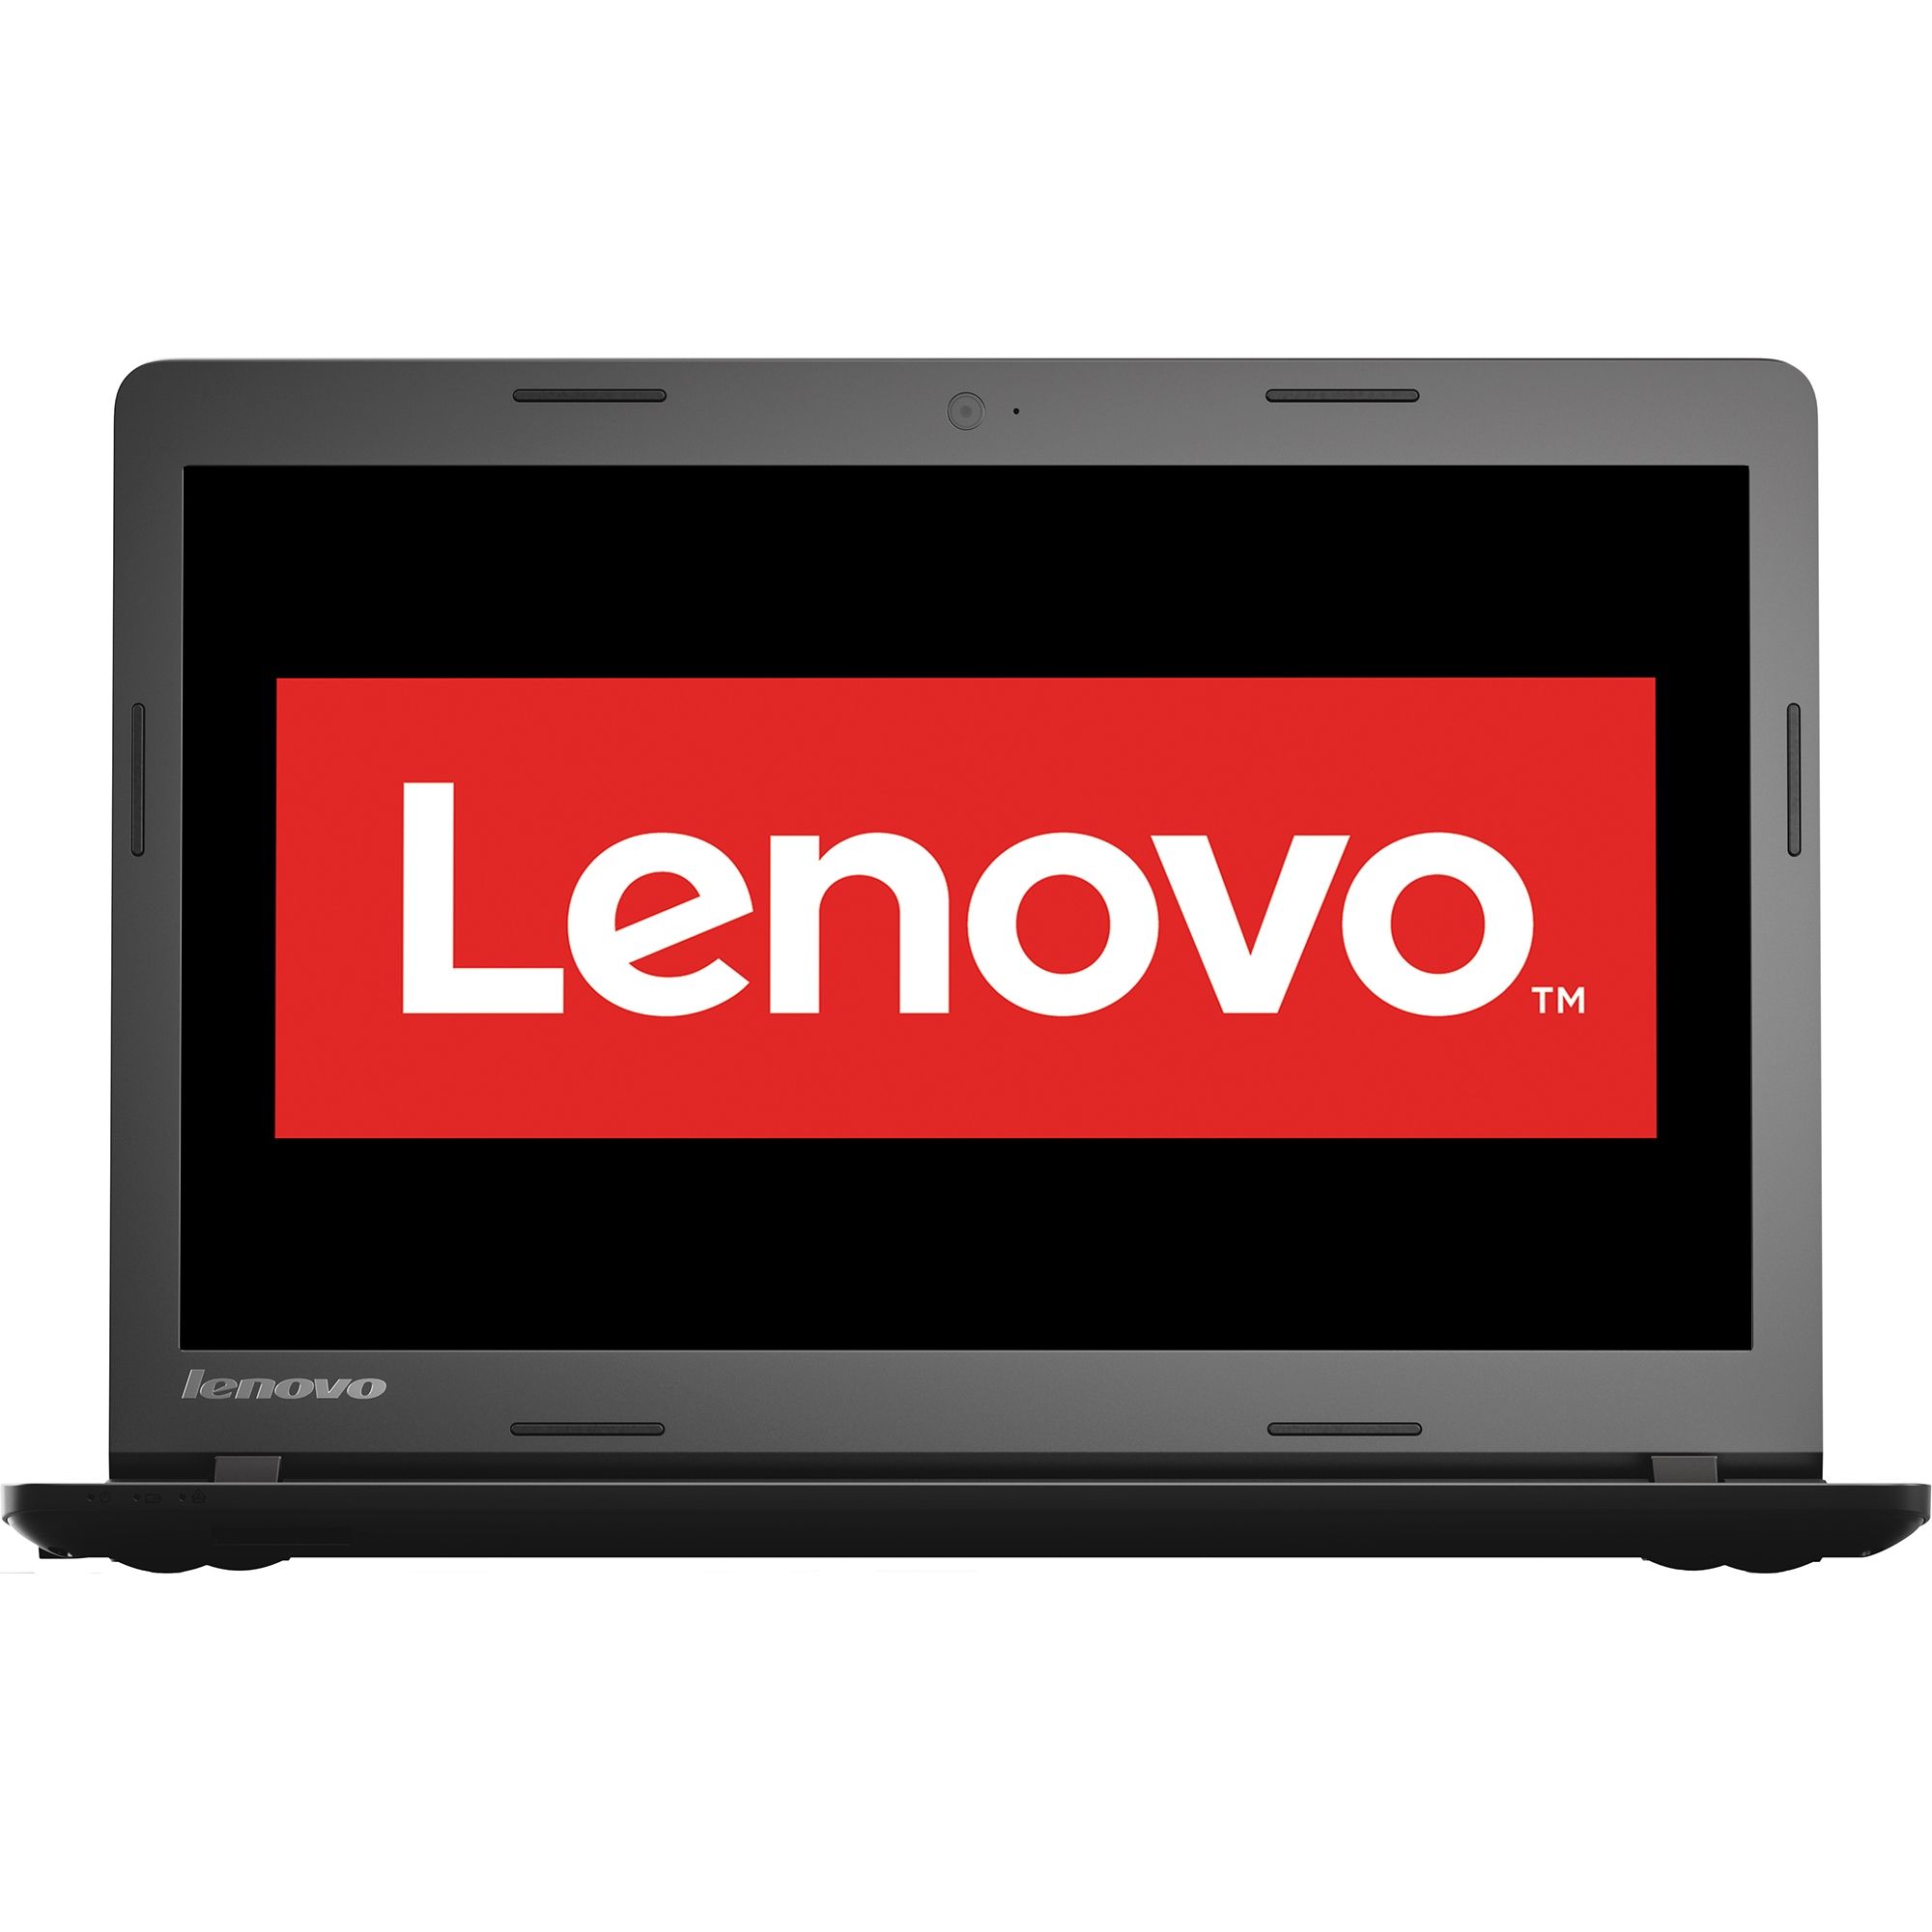  Laptop Lenovo IdeaPad 100-15, Intel Celeron N2840, 4GB DDR3, HDD 500GB, Intel HD Graphics, Free DOS 